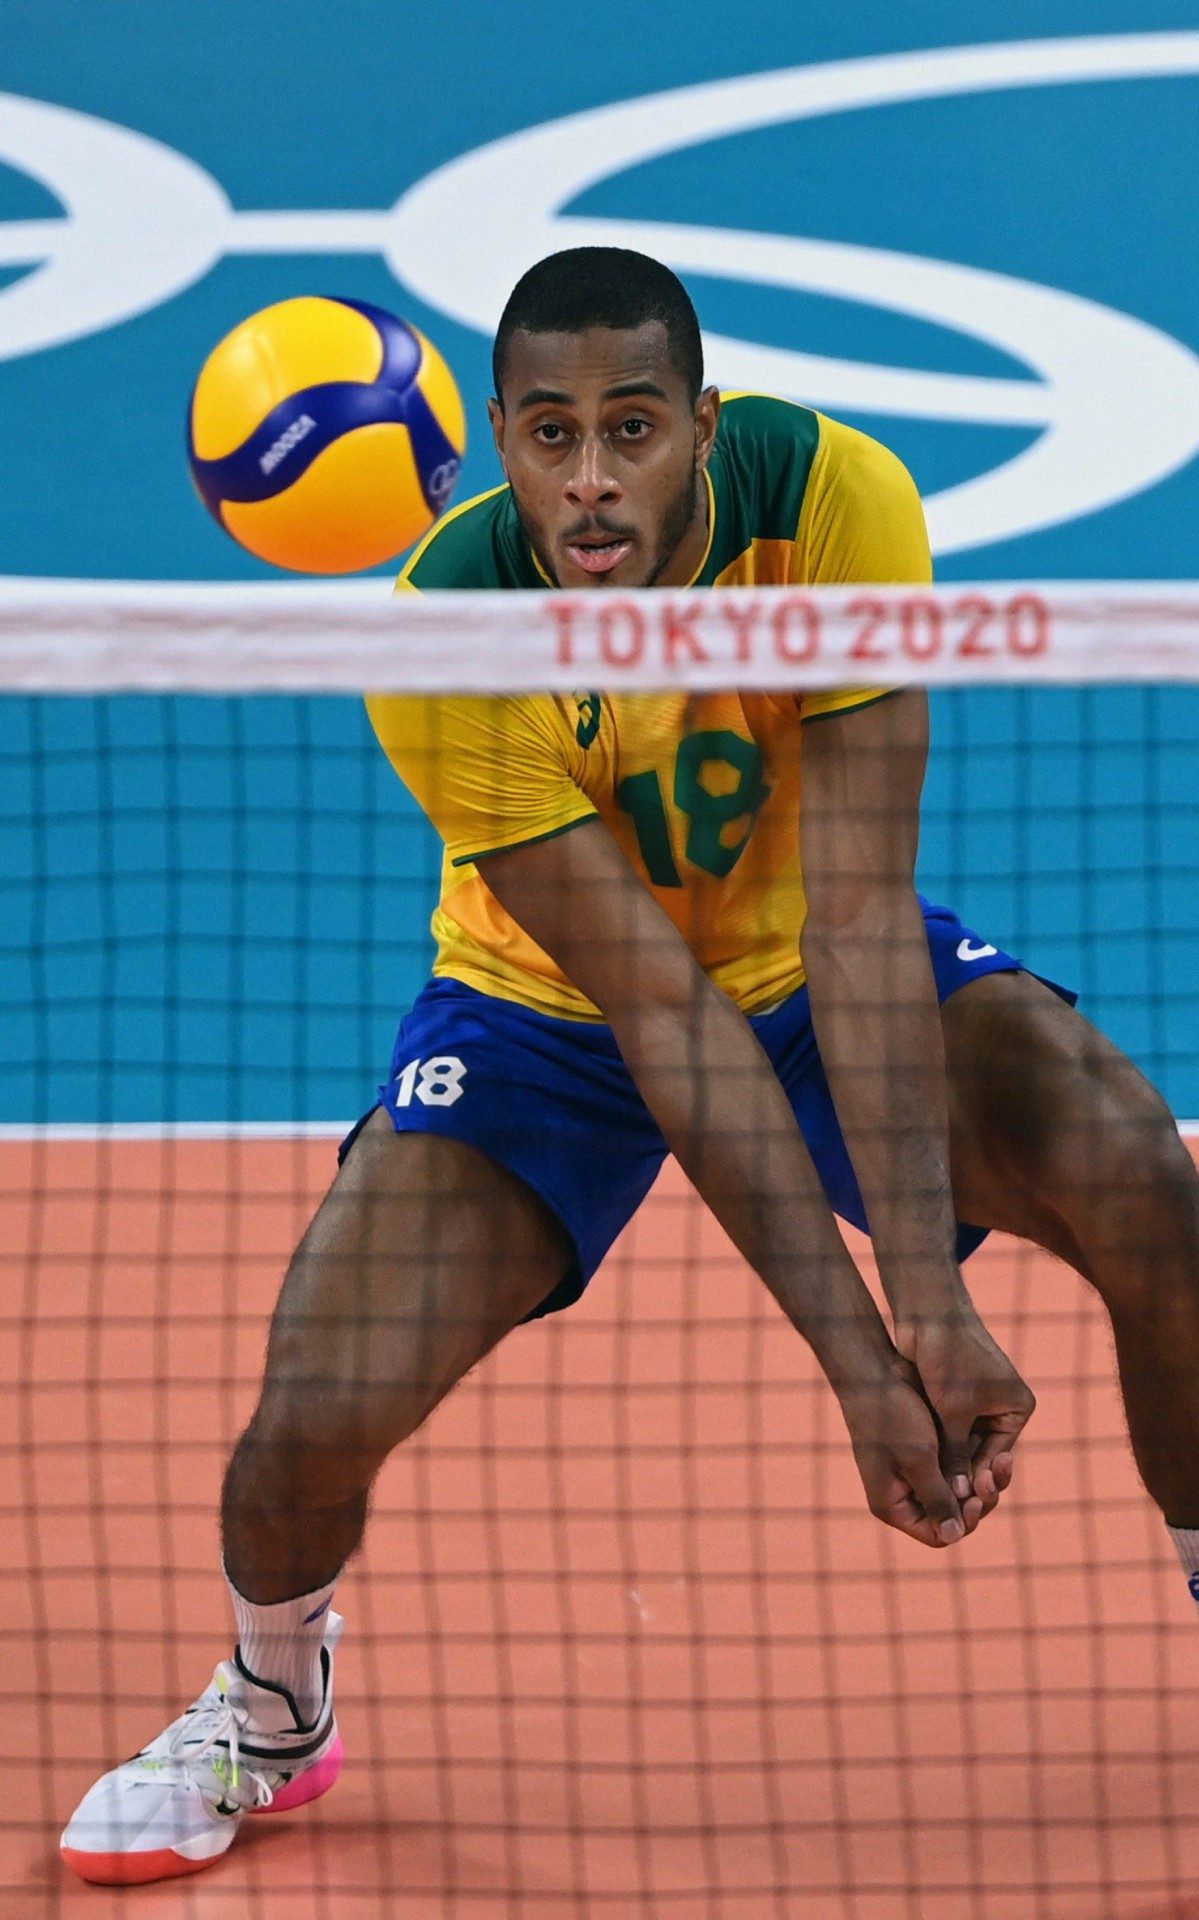 Alan de Souza - seleção brasileira de vôlei - Olimpíada de Tóquio 2020